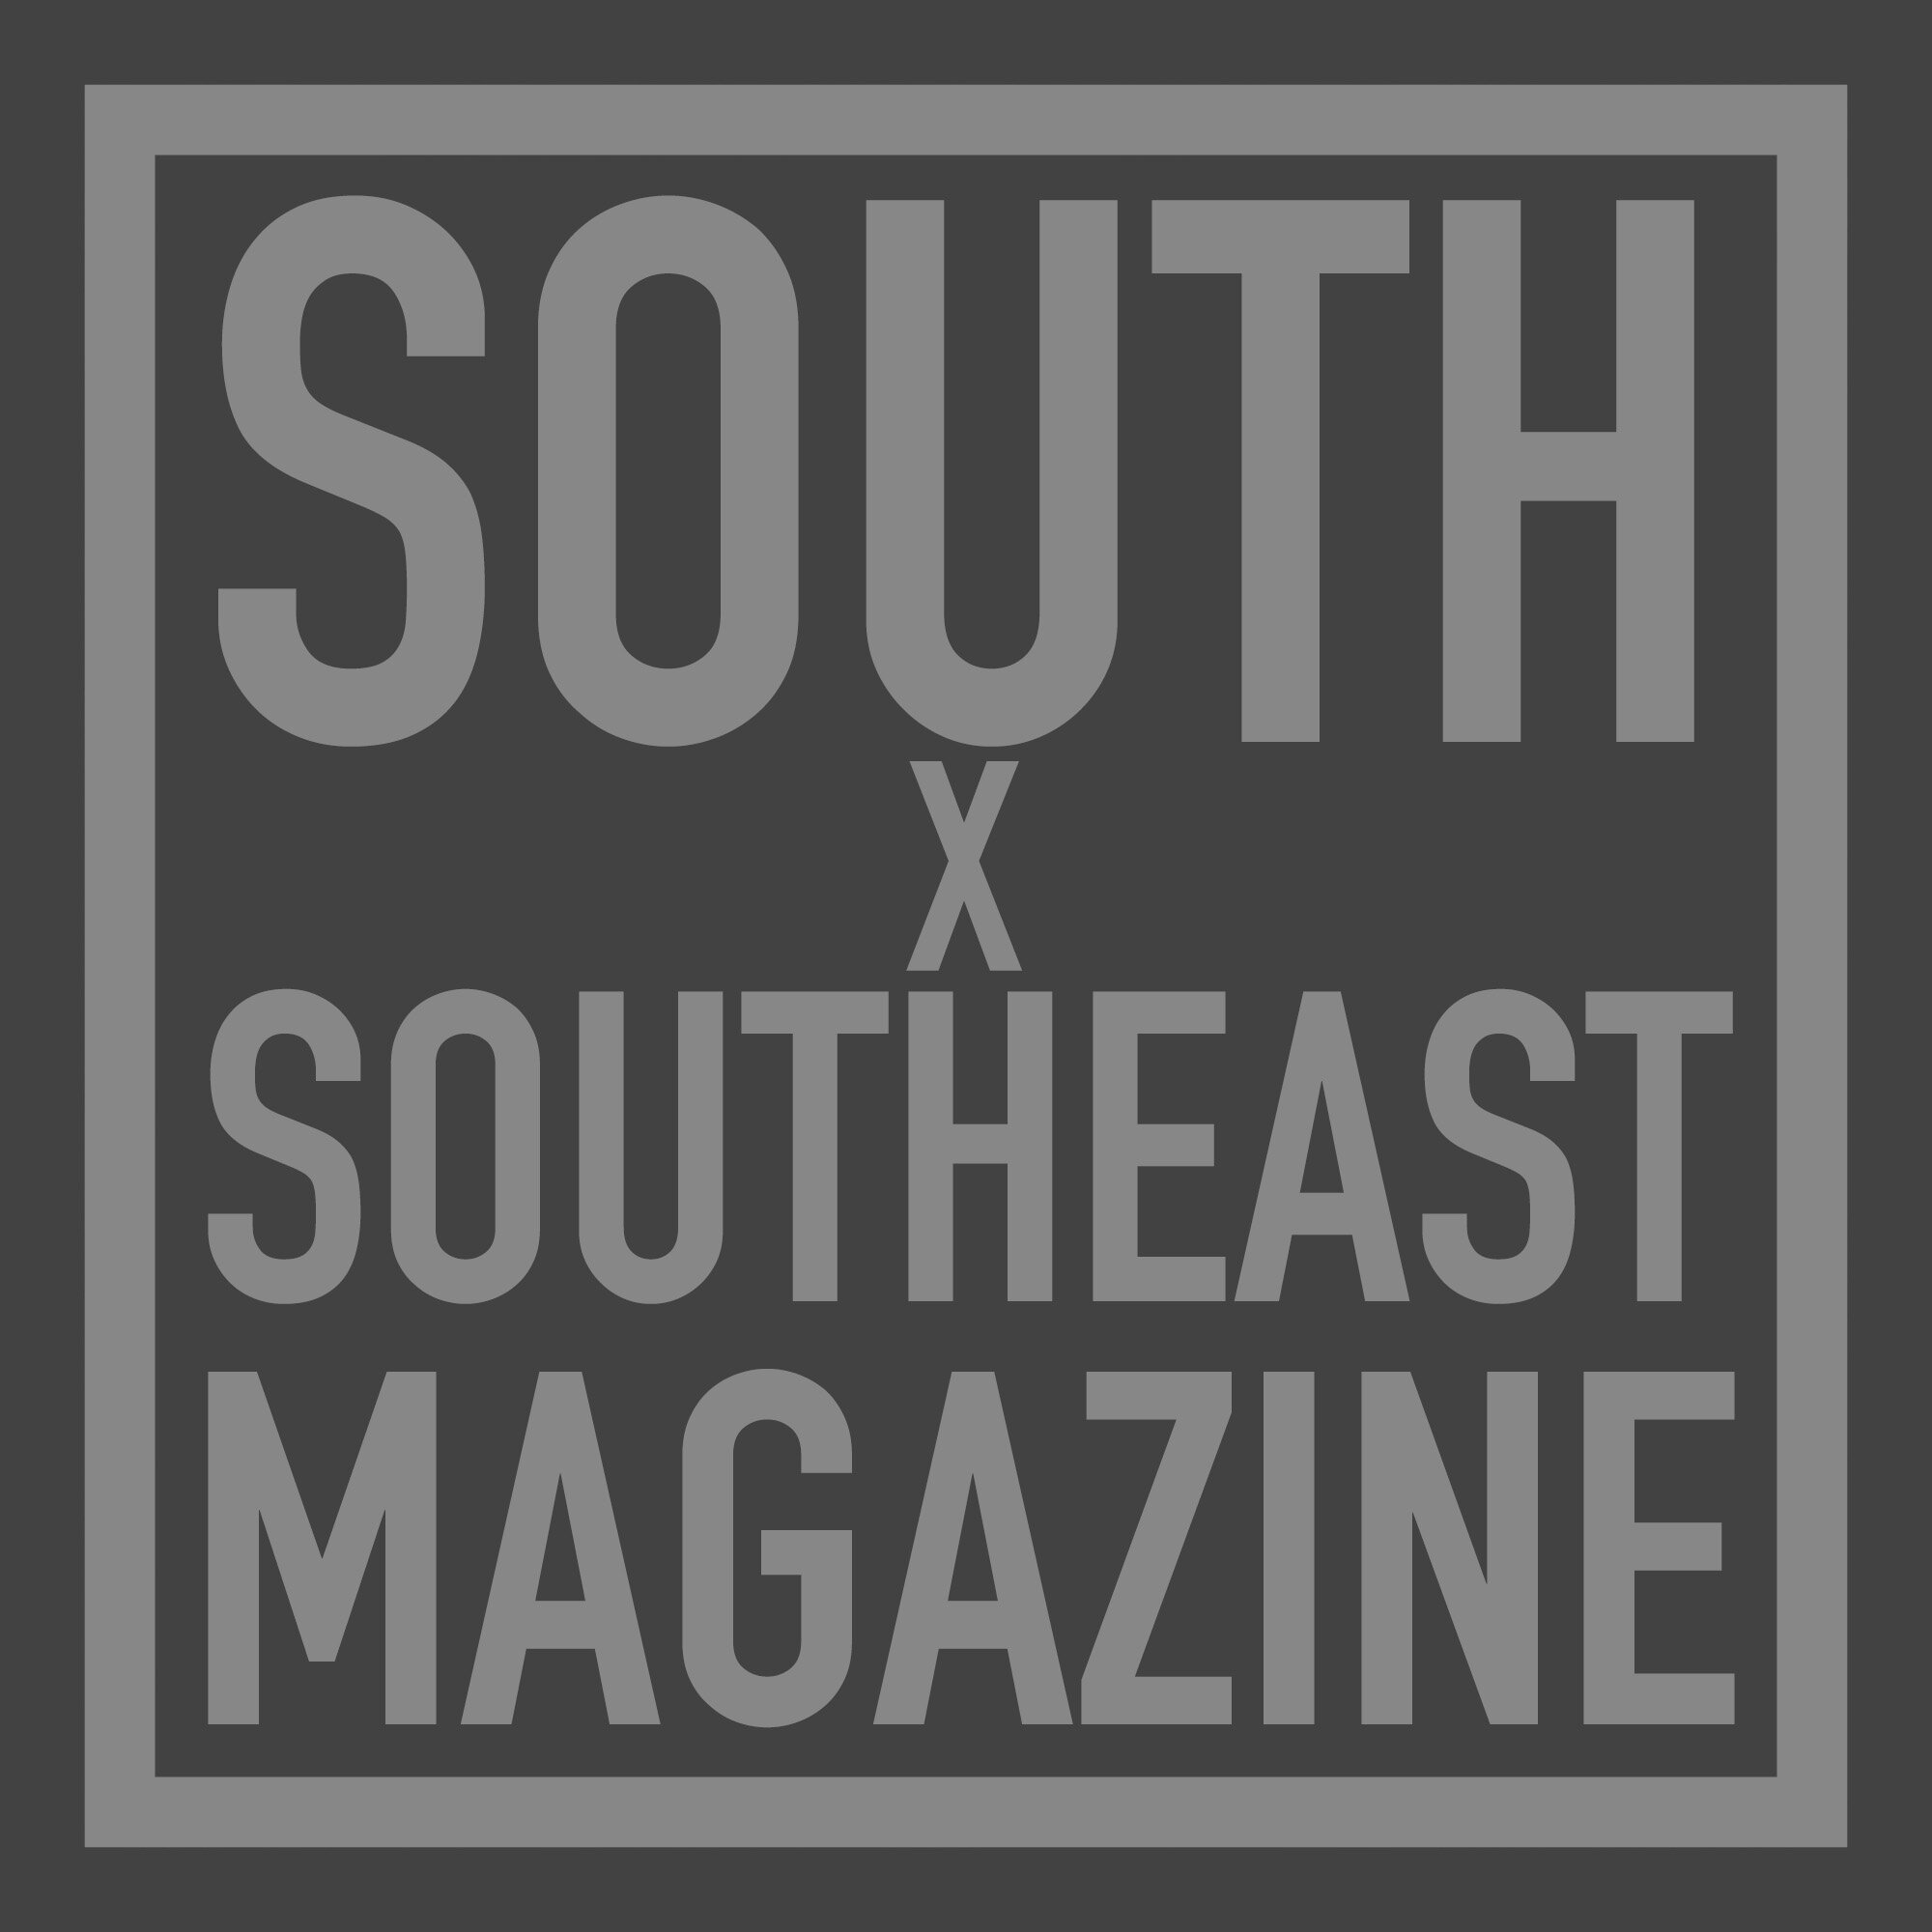 SouthxSoutheast Magazine